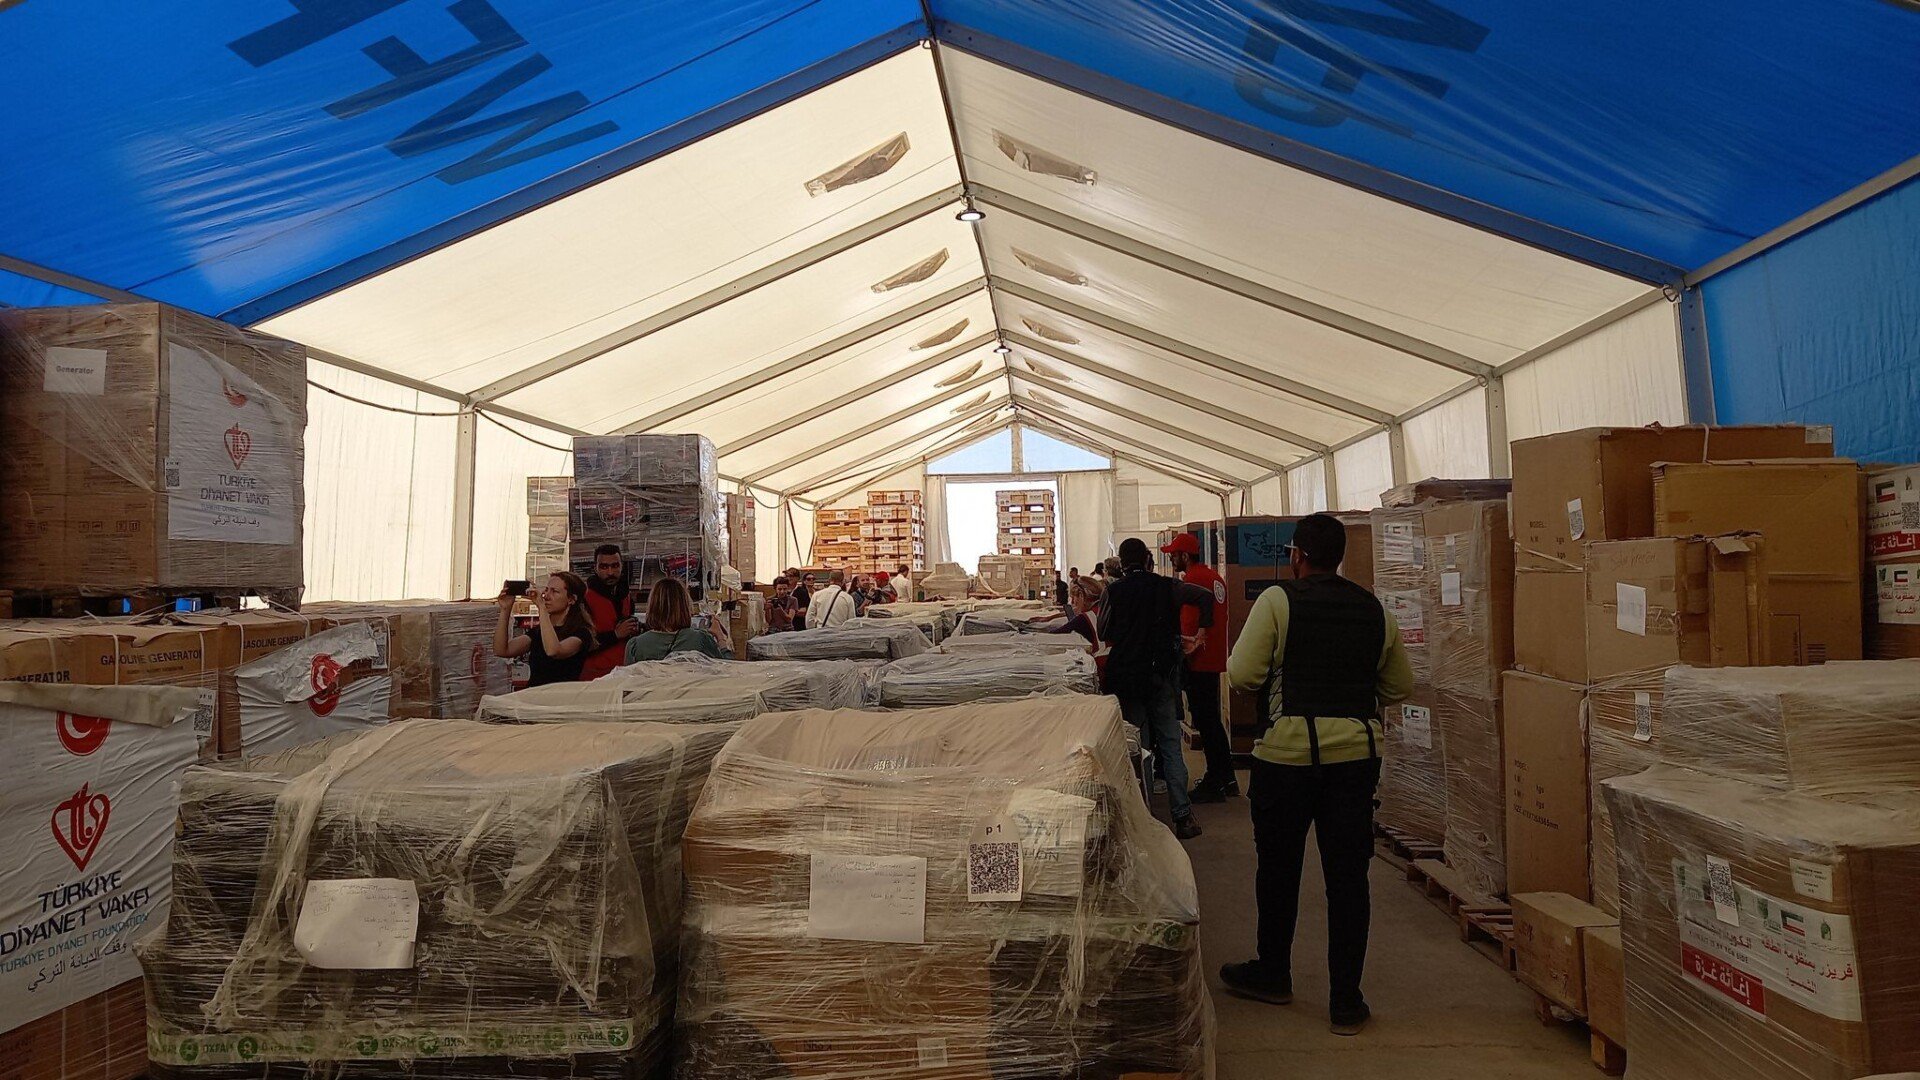 Galpão com caixas de ajuda humanitária para Gaza em Rafah, no Egito